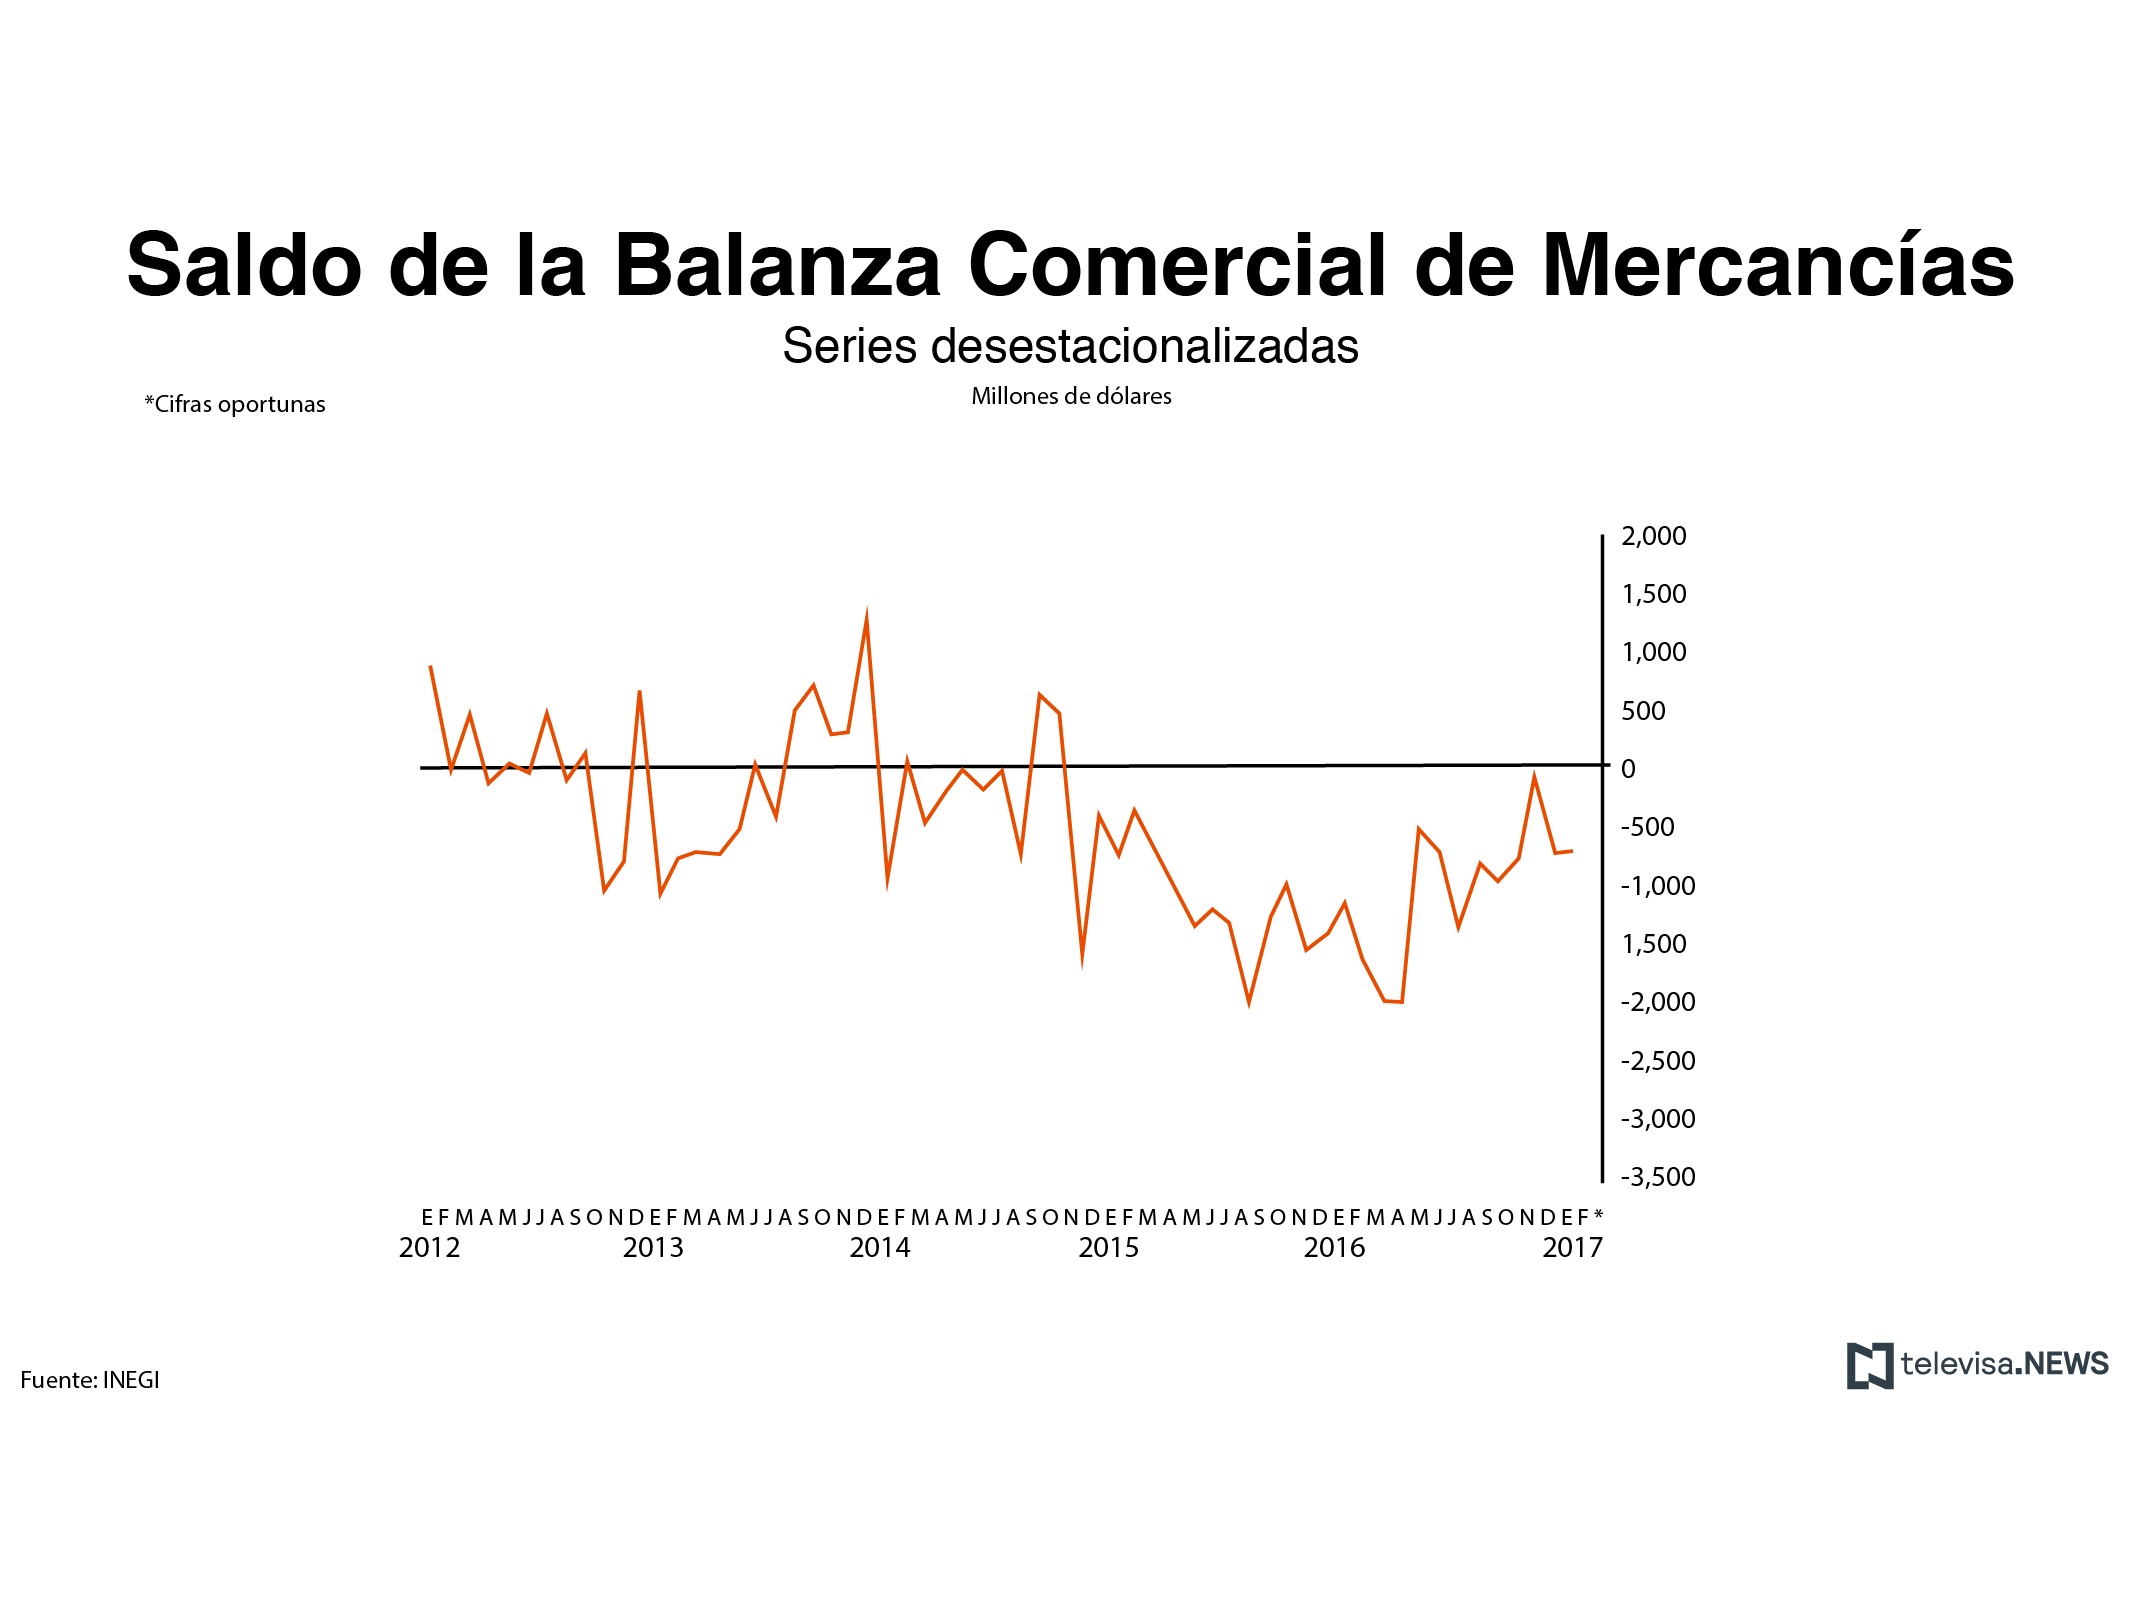 Saldo de la balanza comercial de mercancías. (Noticieros Televisa)